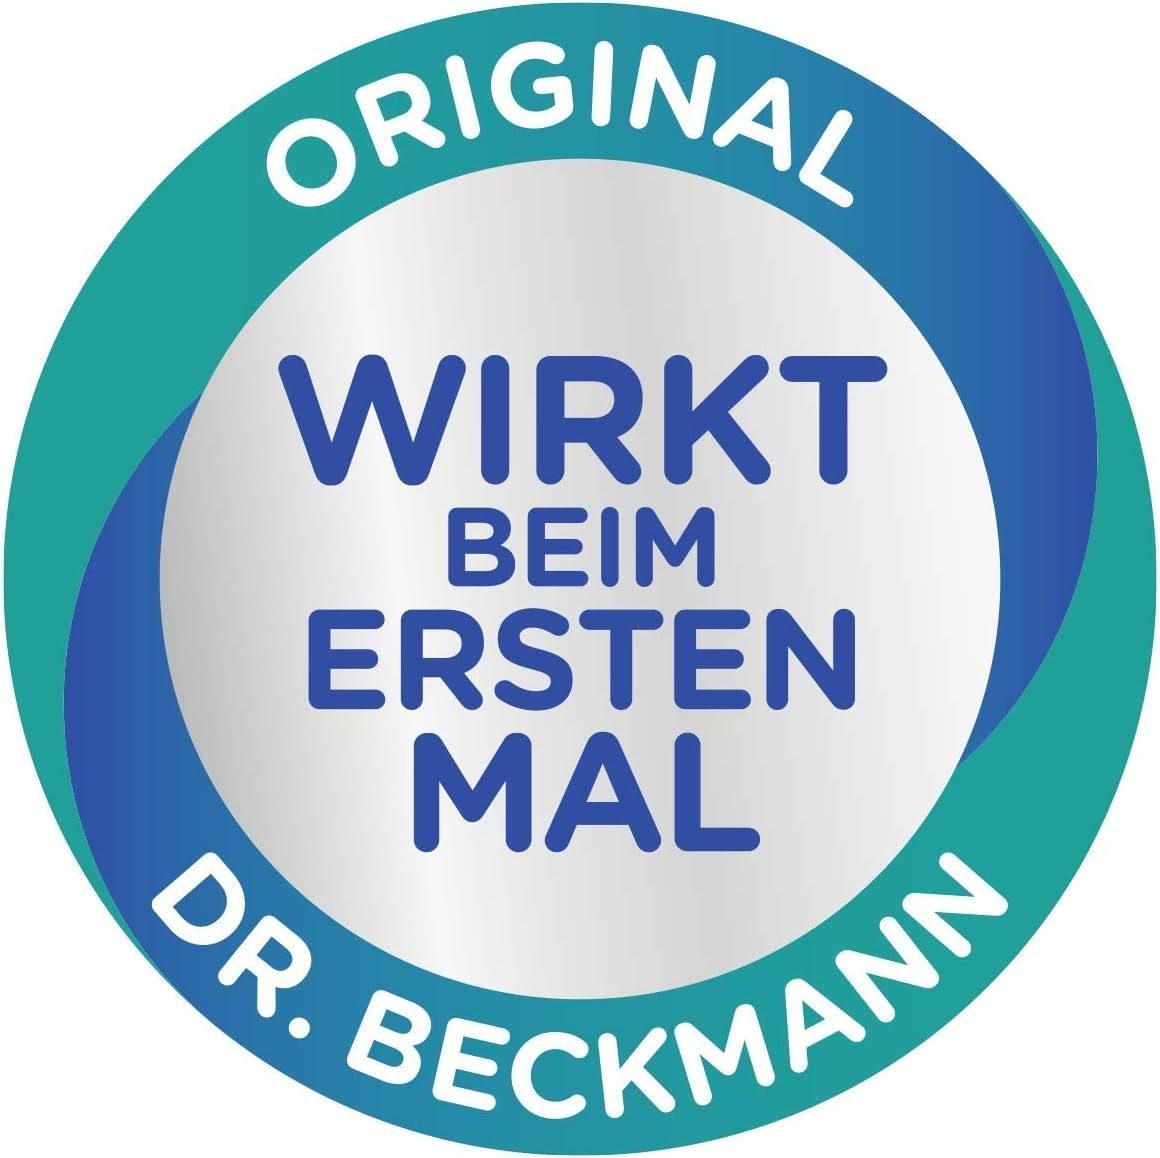 (1-St) Fleckentferner, Fleckenschaum 500ml für Dr. Beckmann alle Oxi-Power, Farben, Polsterreiniger